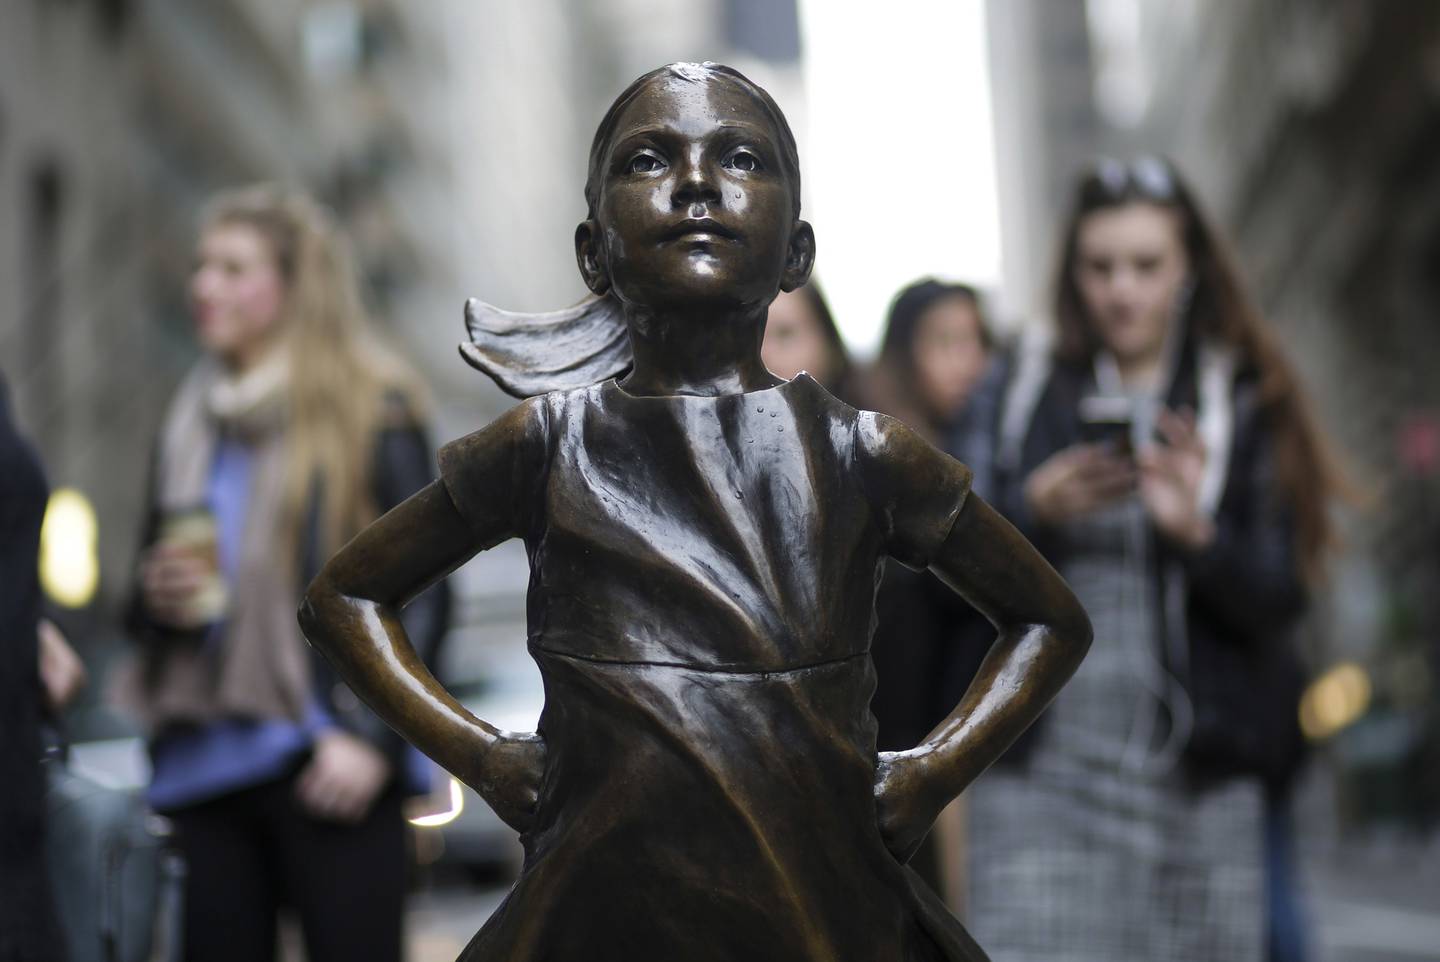 Estátua 'A Menina sem Medo', em Wall Street: presença feminina no mercado financeiro e em fintechs e bancos ainda é reduzida, apontam estudos